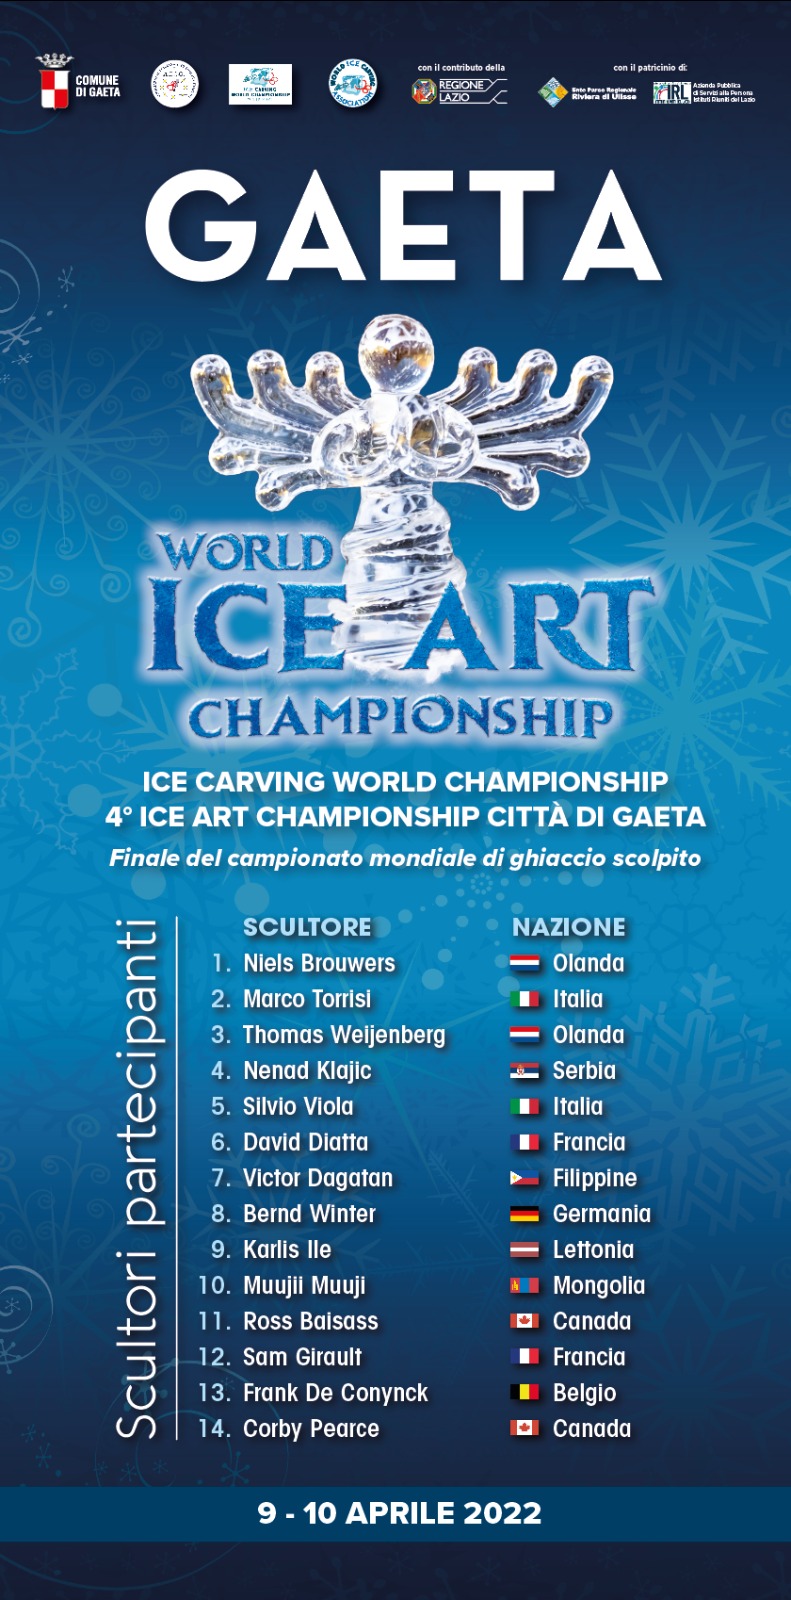 Ice Carving World Championship – IV Ice Art Championship città di Gaeta. 9 e 10 aprile la finale del campionato mondiale di ghiaccio scolpito